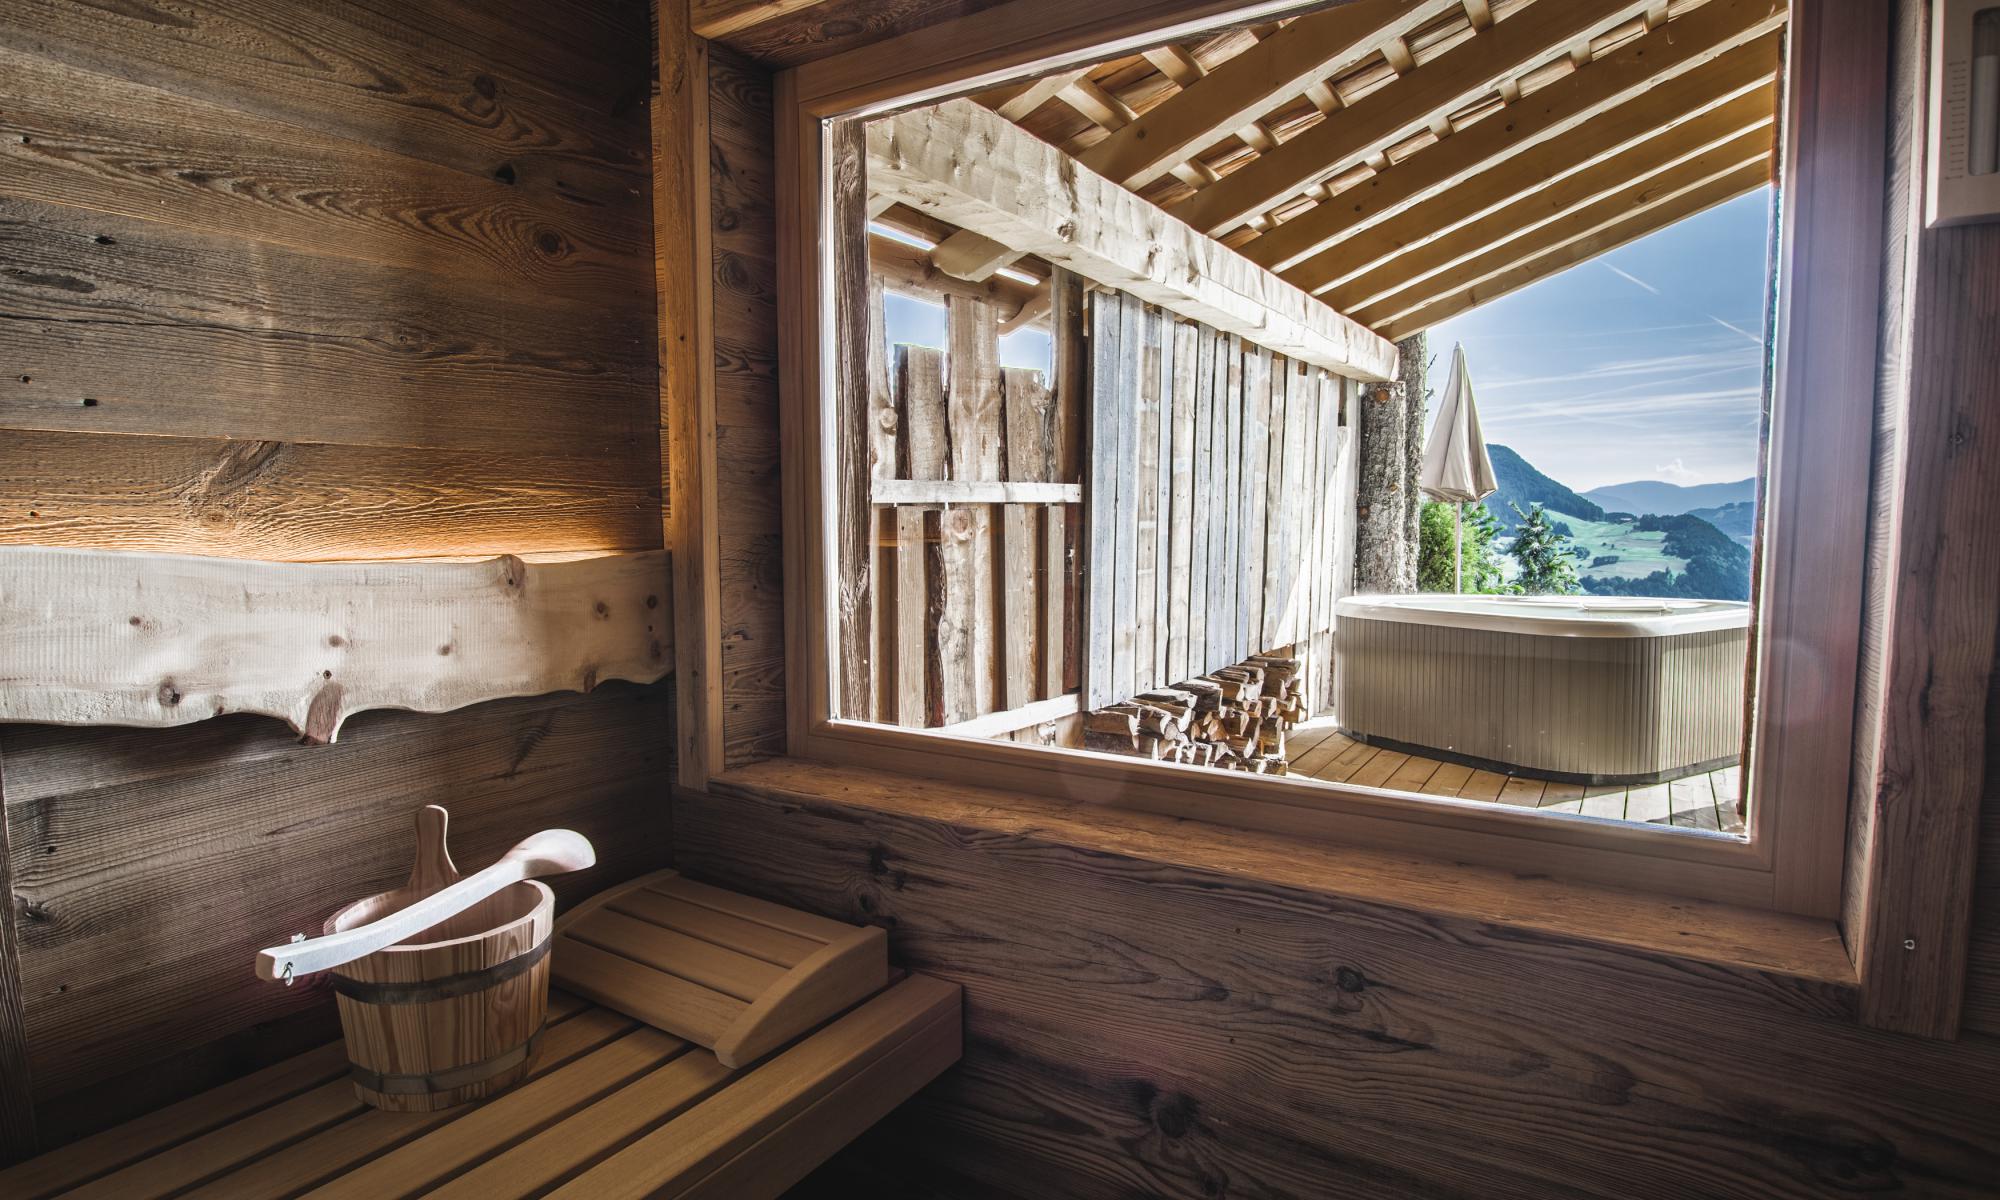 Caratteristica sauna in legno con finestra panoramica